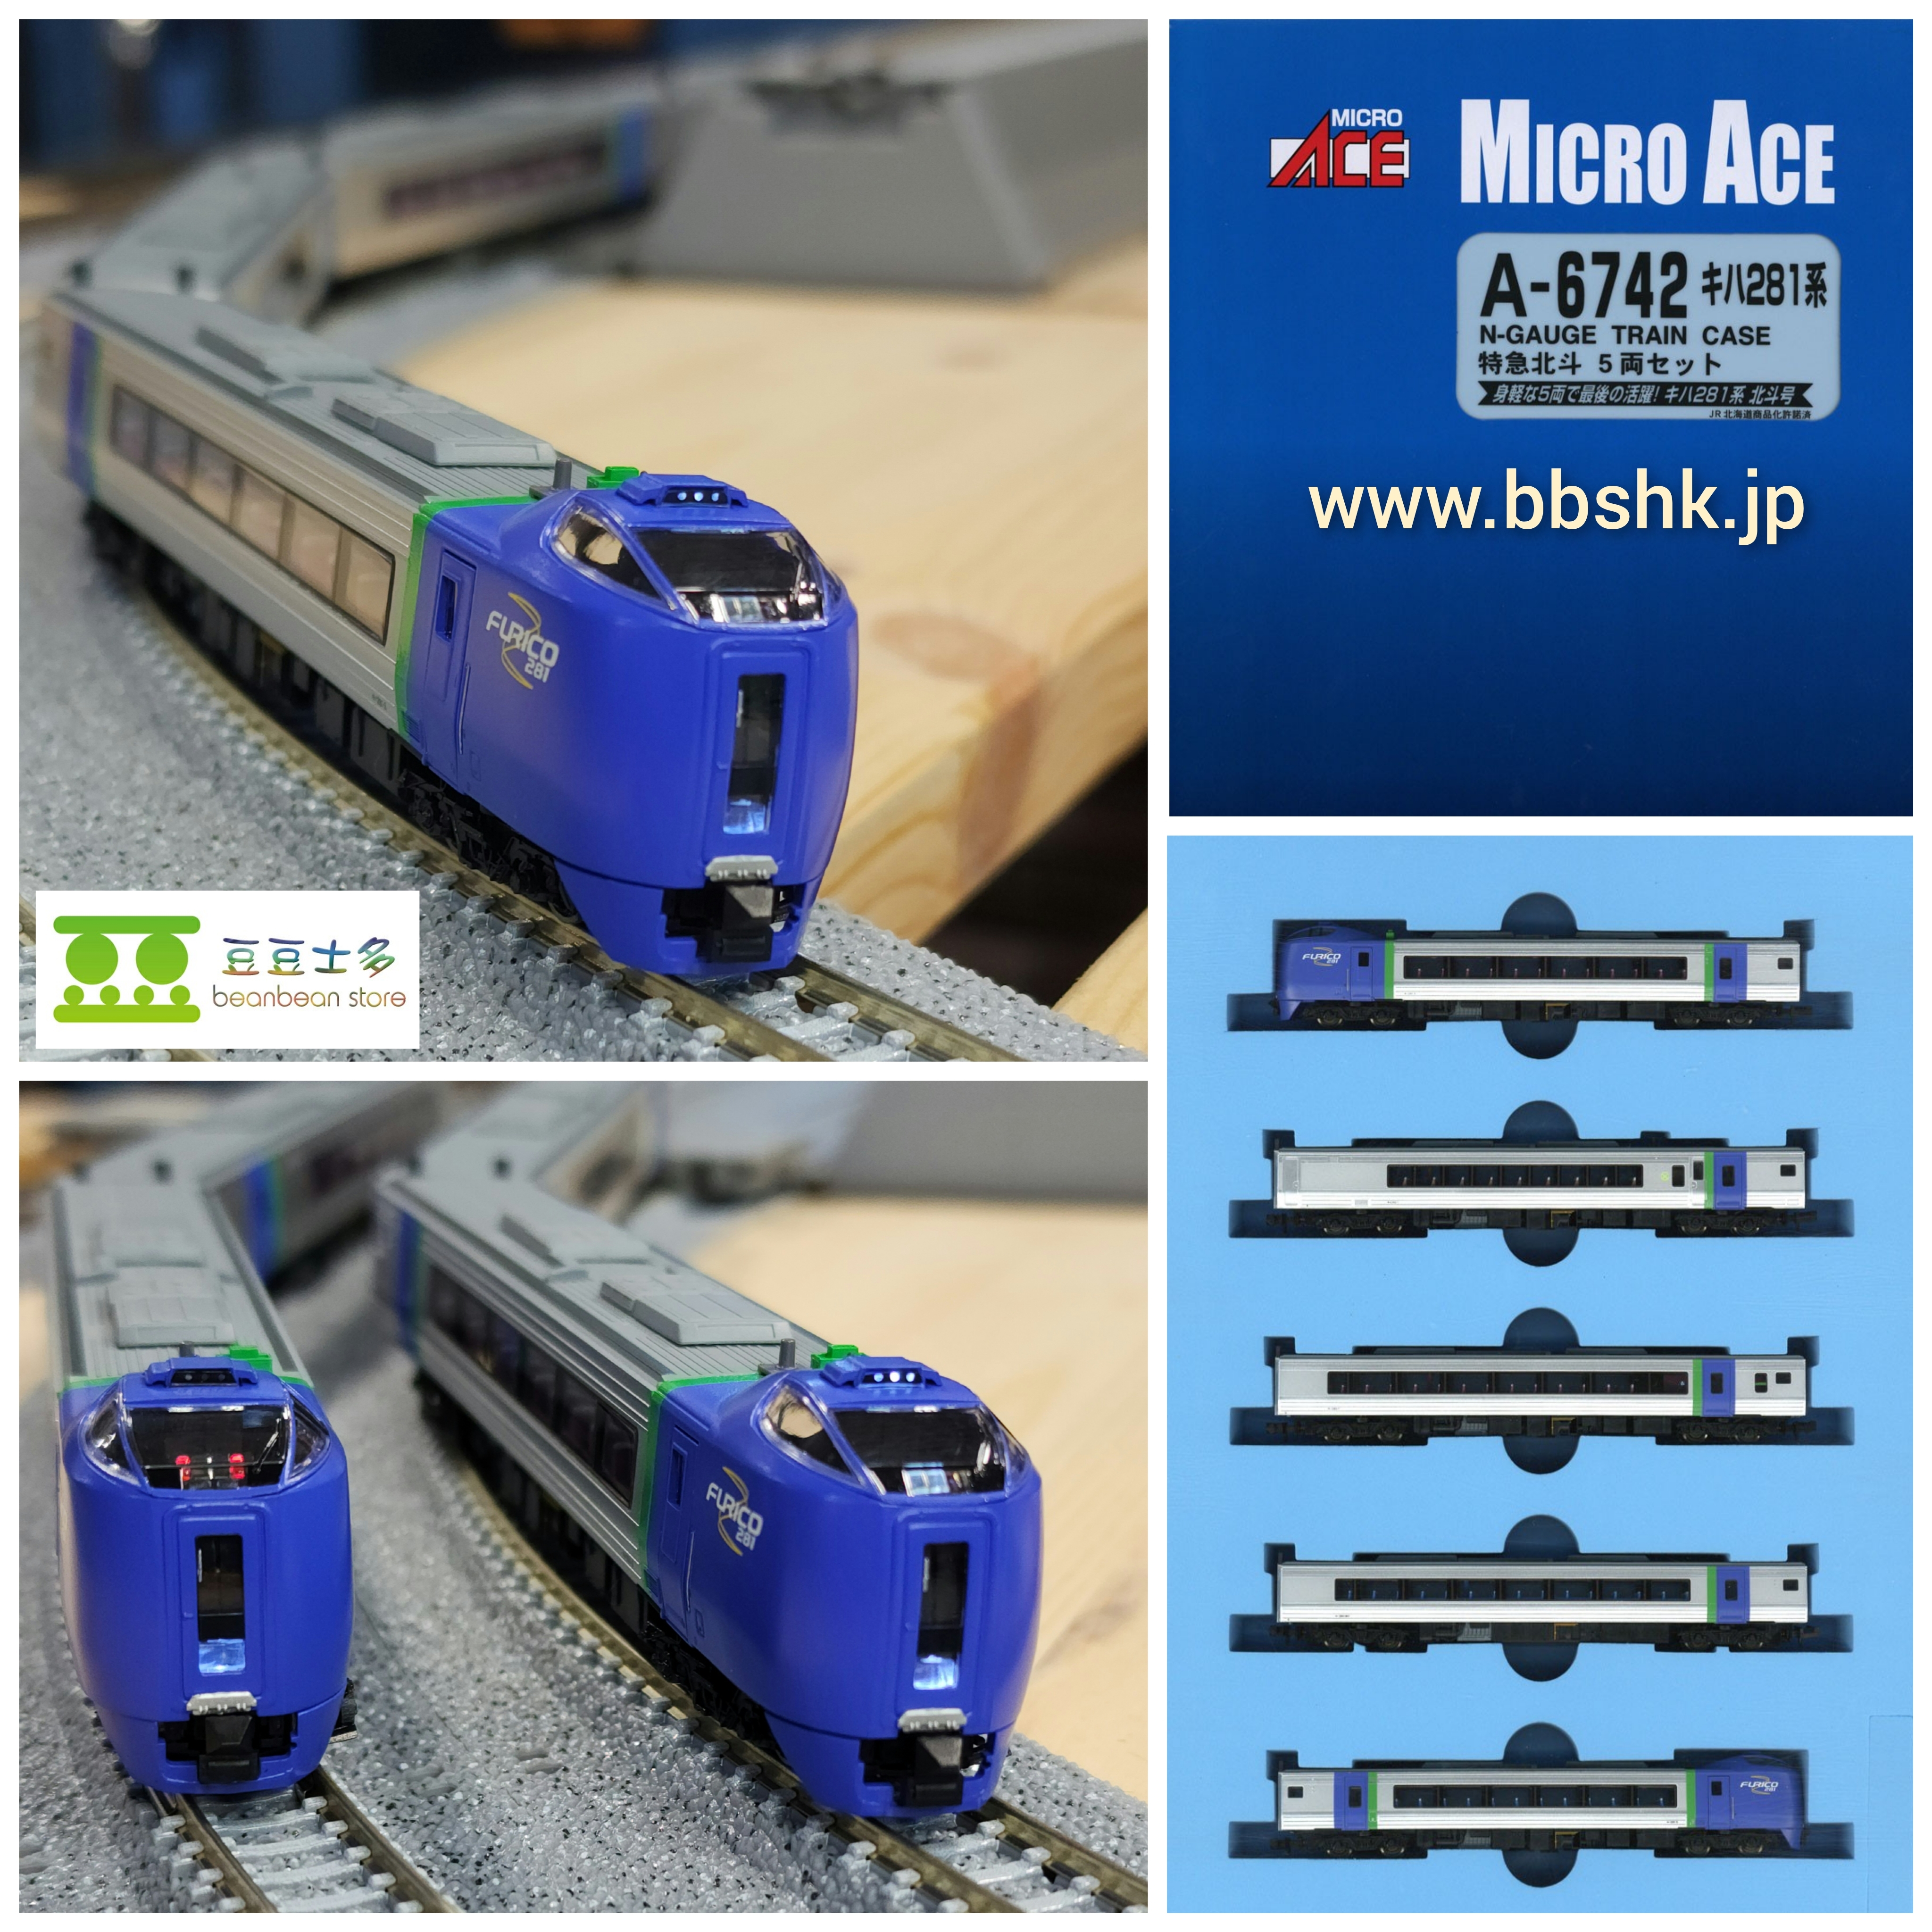 有名ブランド 希少新品マイクロエースキハ281系セット 鉄道模型 - www